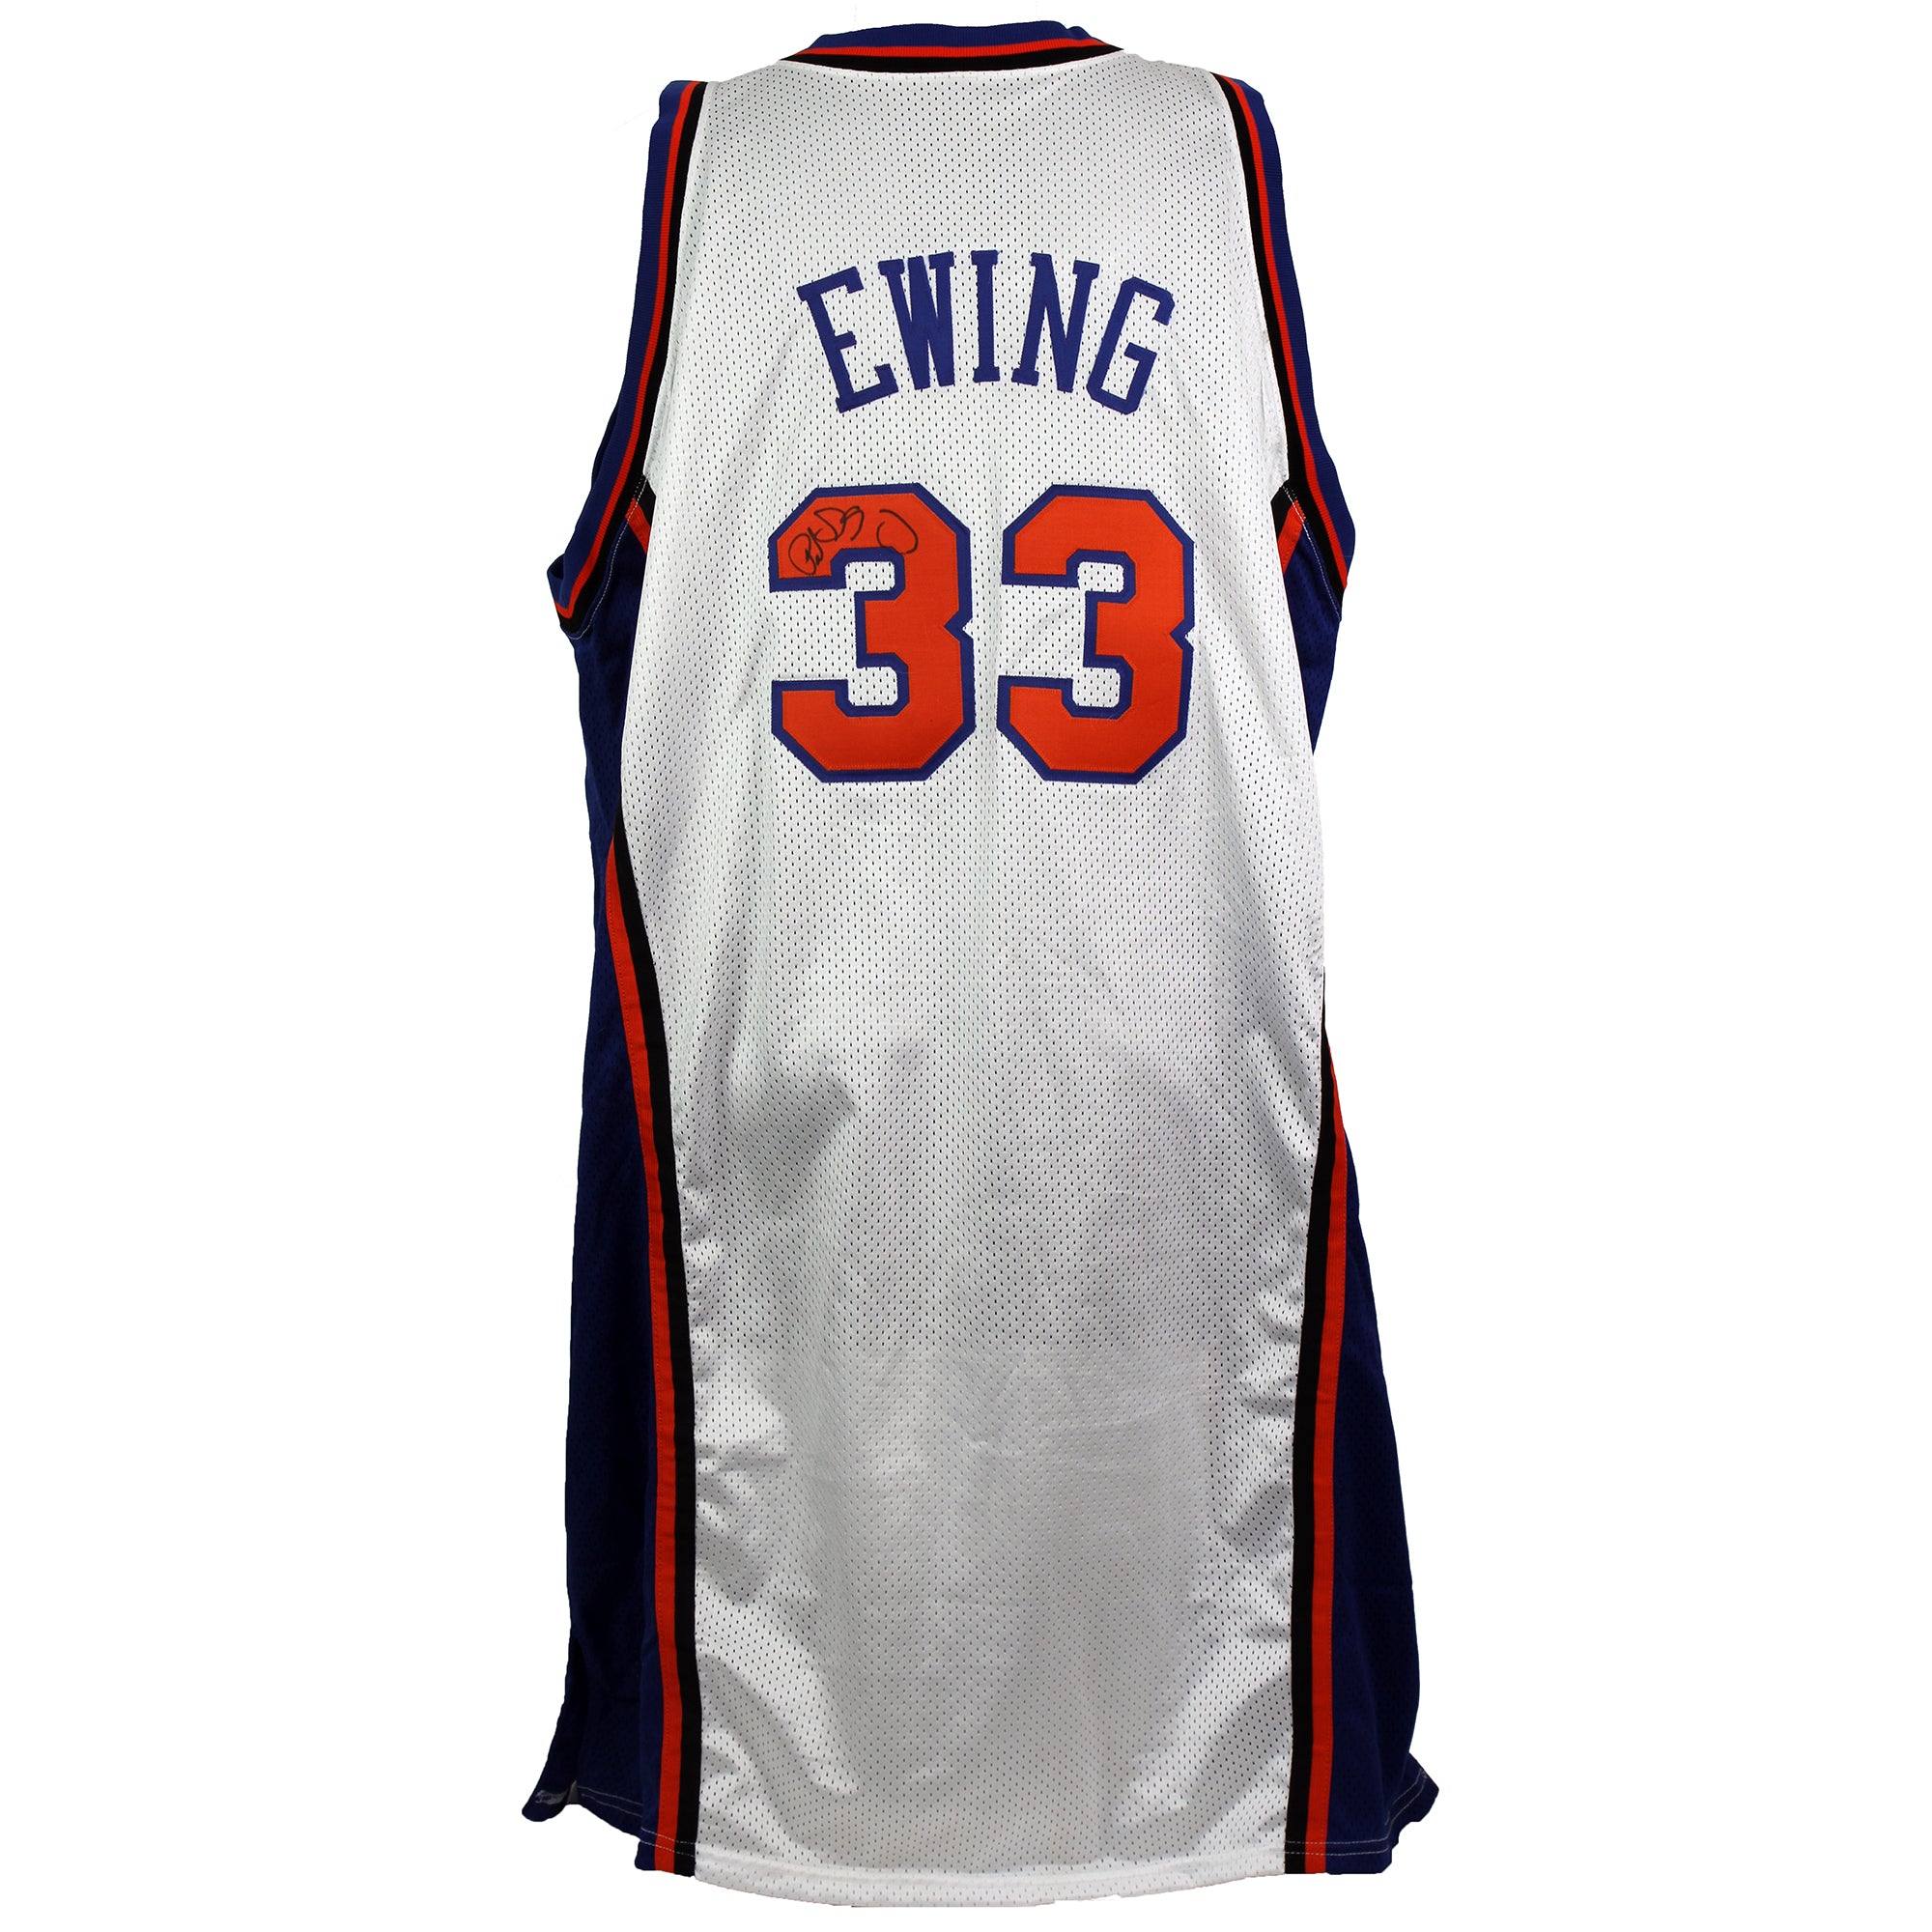 Patrick Ewing 2000-01 Game Worn Jersey